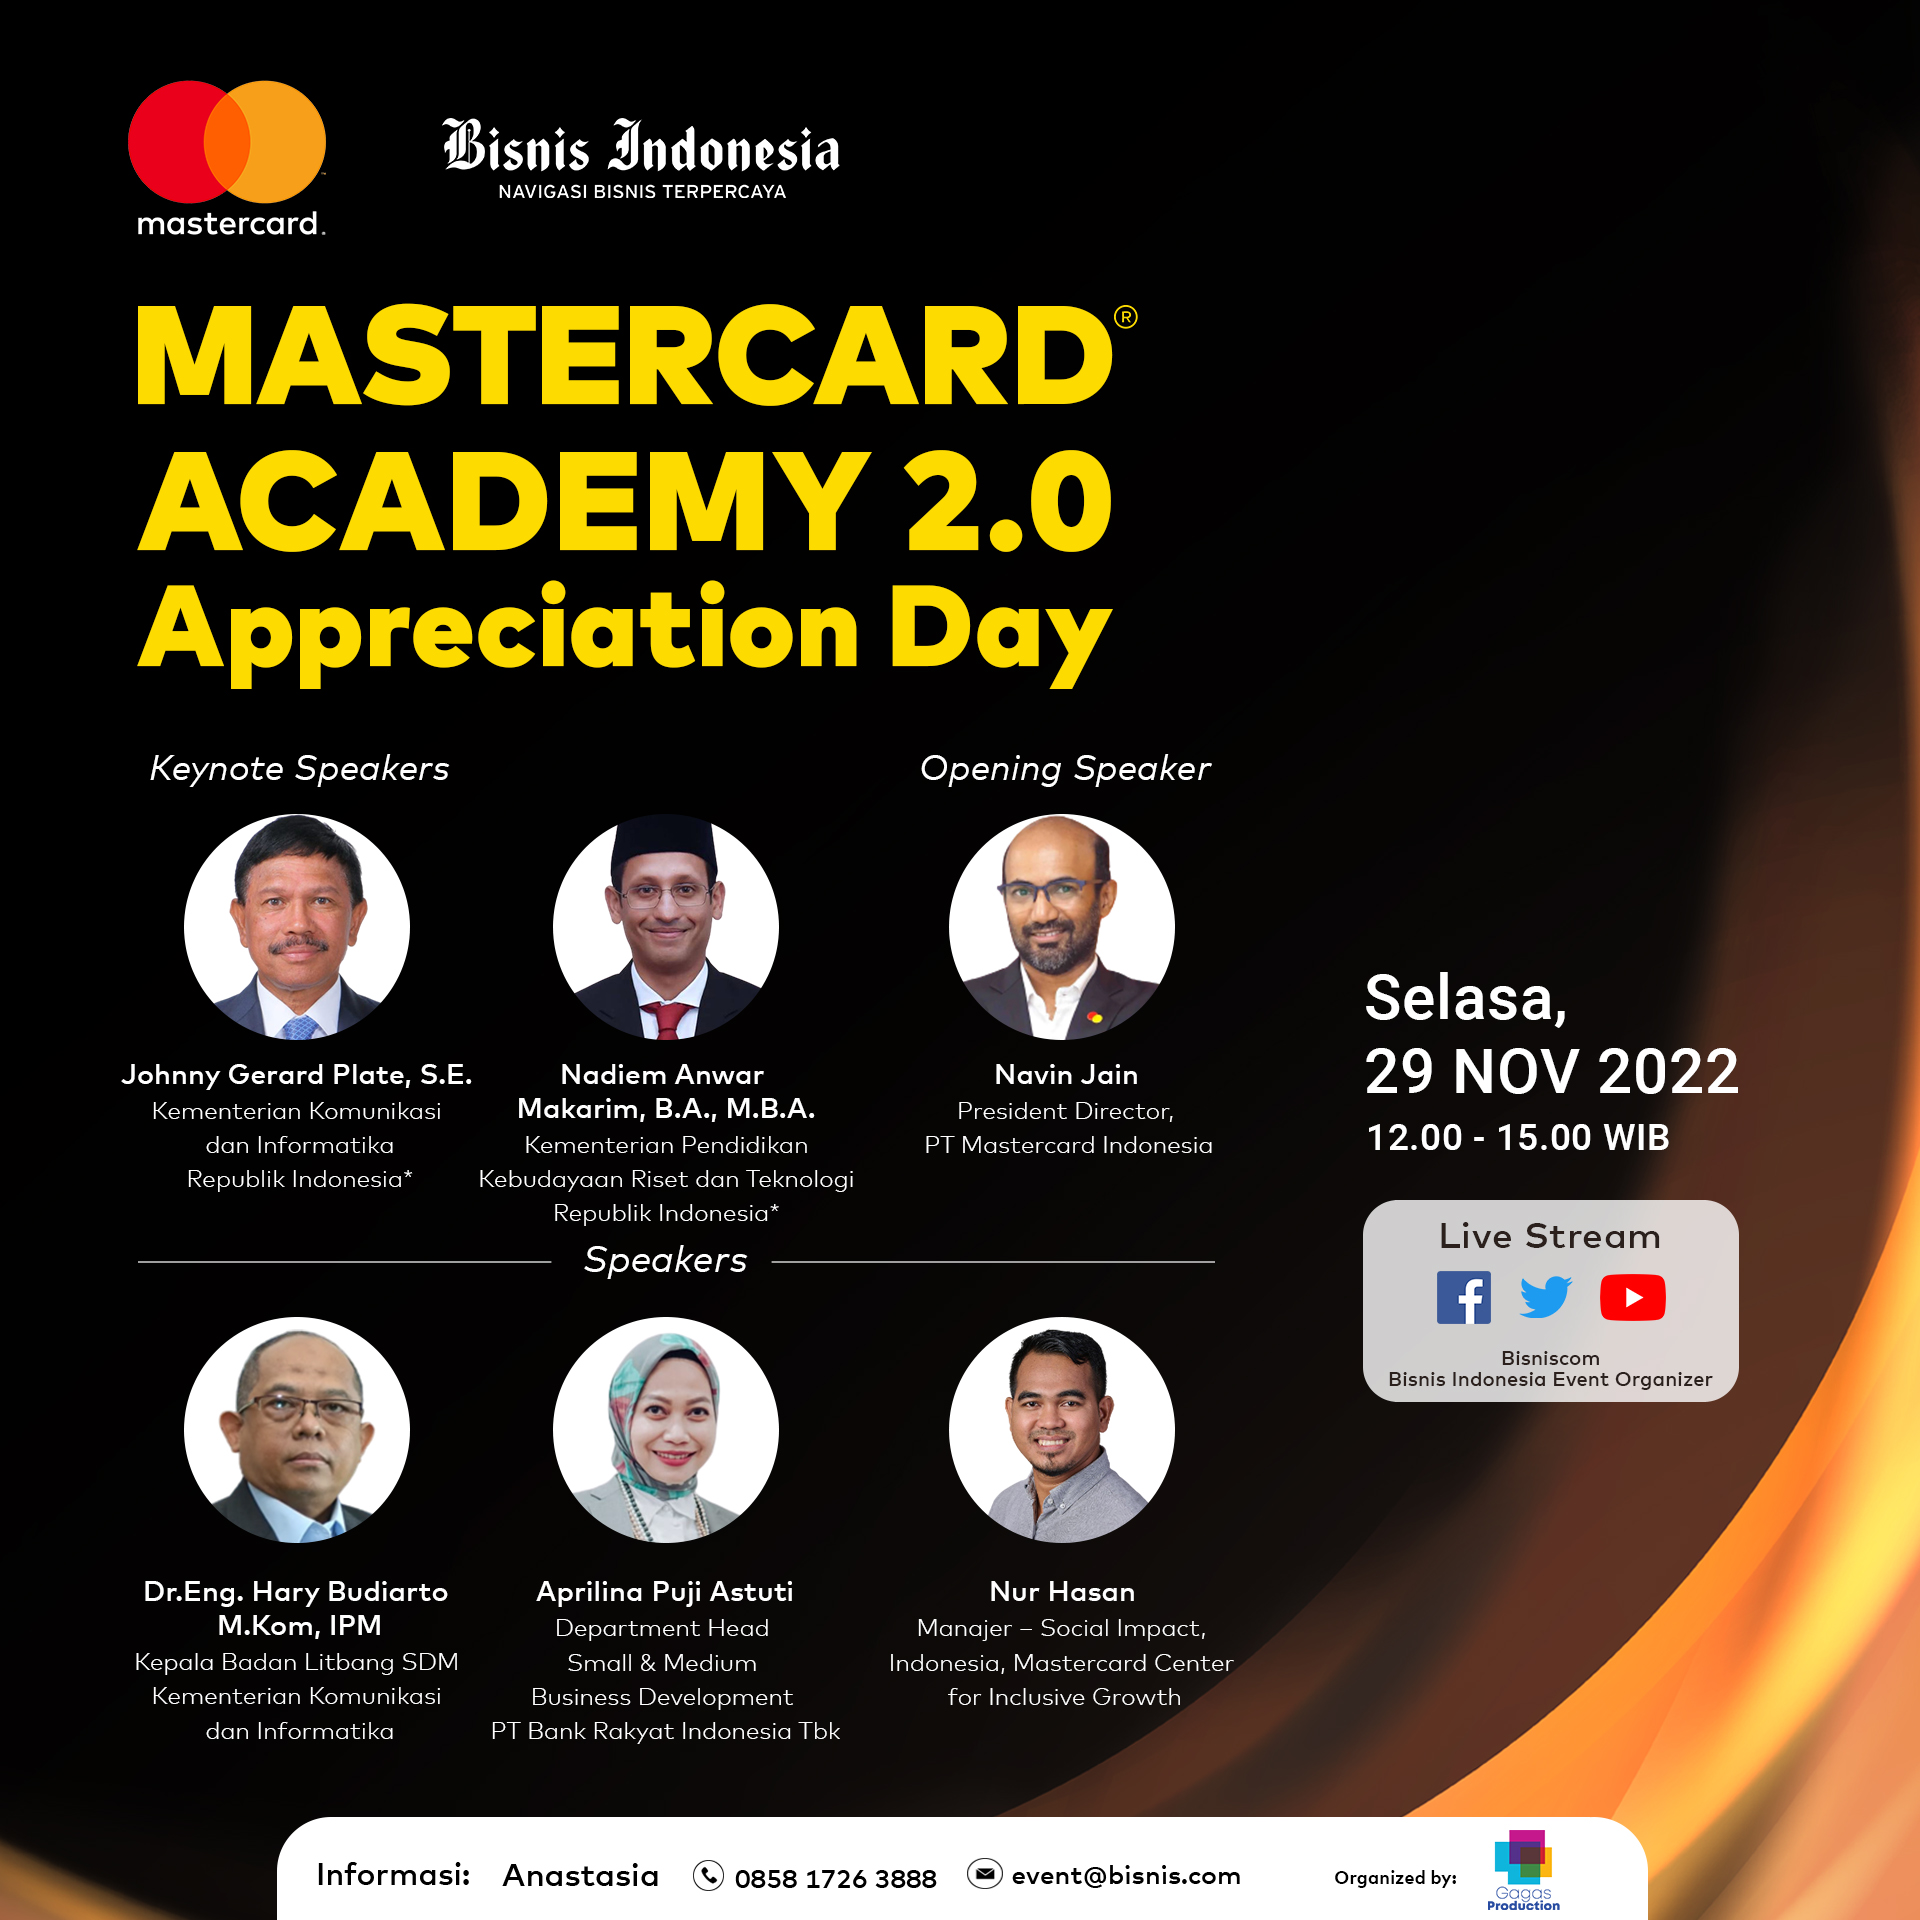 Mastercard Academy Appreciation Day 2.0